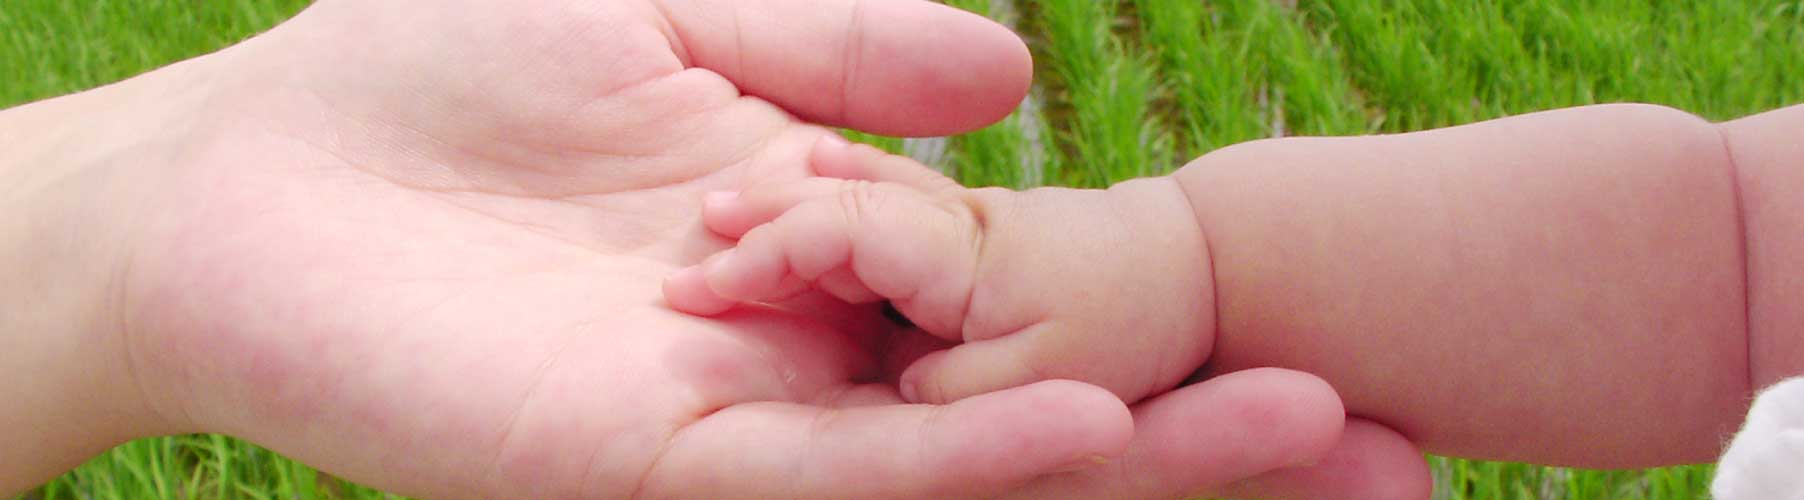 大人の手が赤ちゃんの手に触れている写真